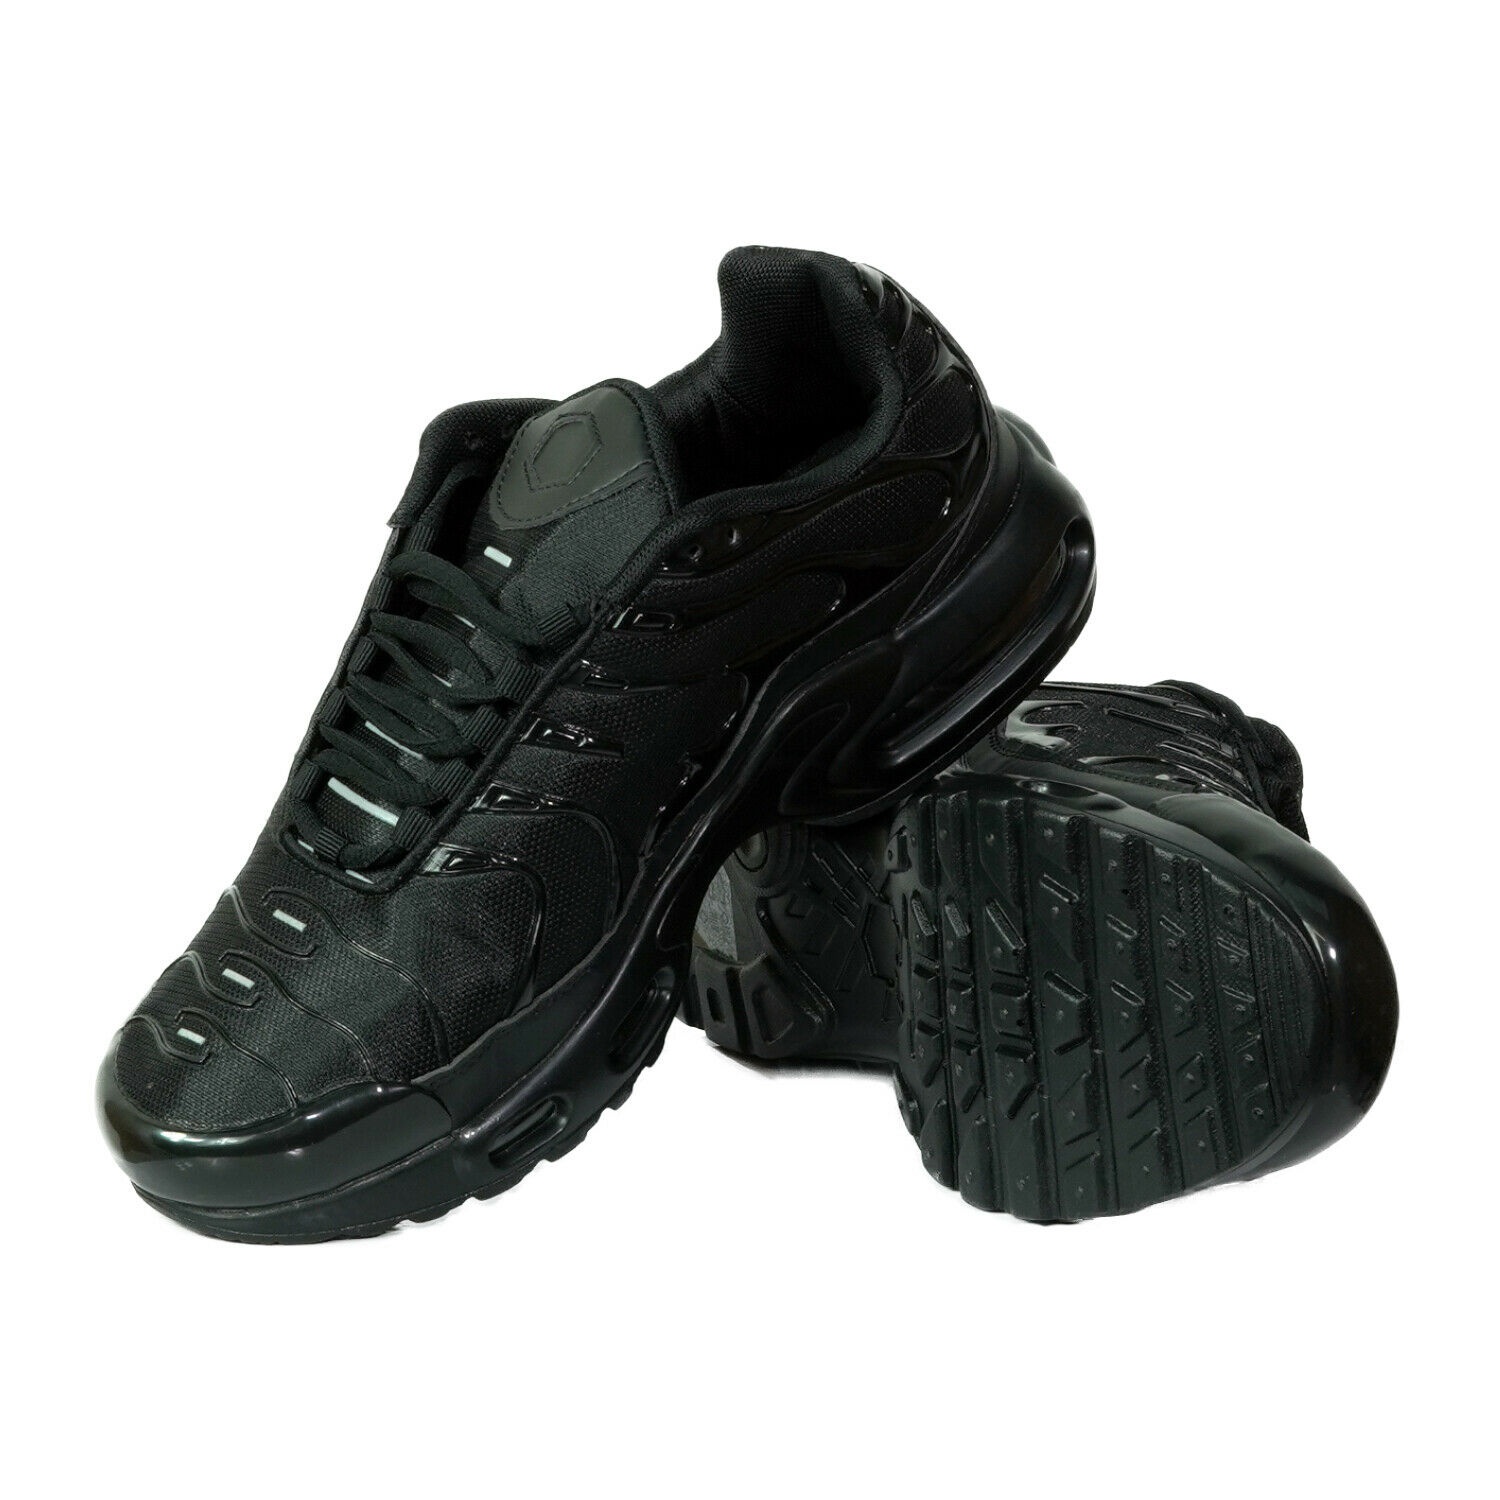 Mens Jogging Gym Shoes shoes200 xxl